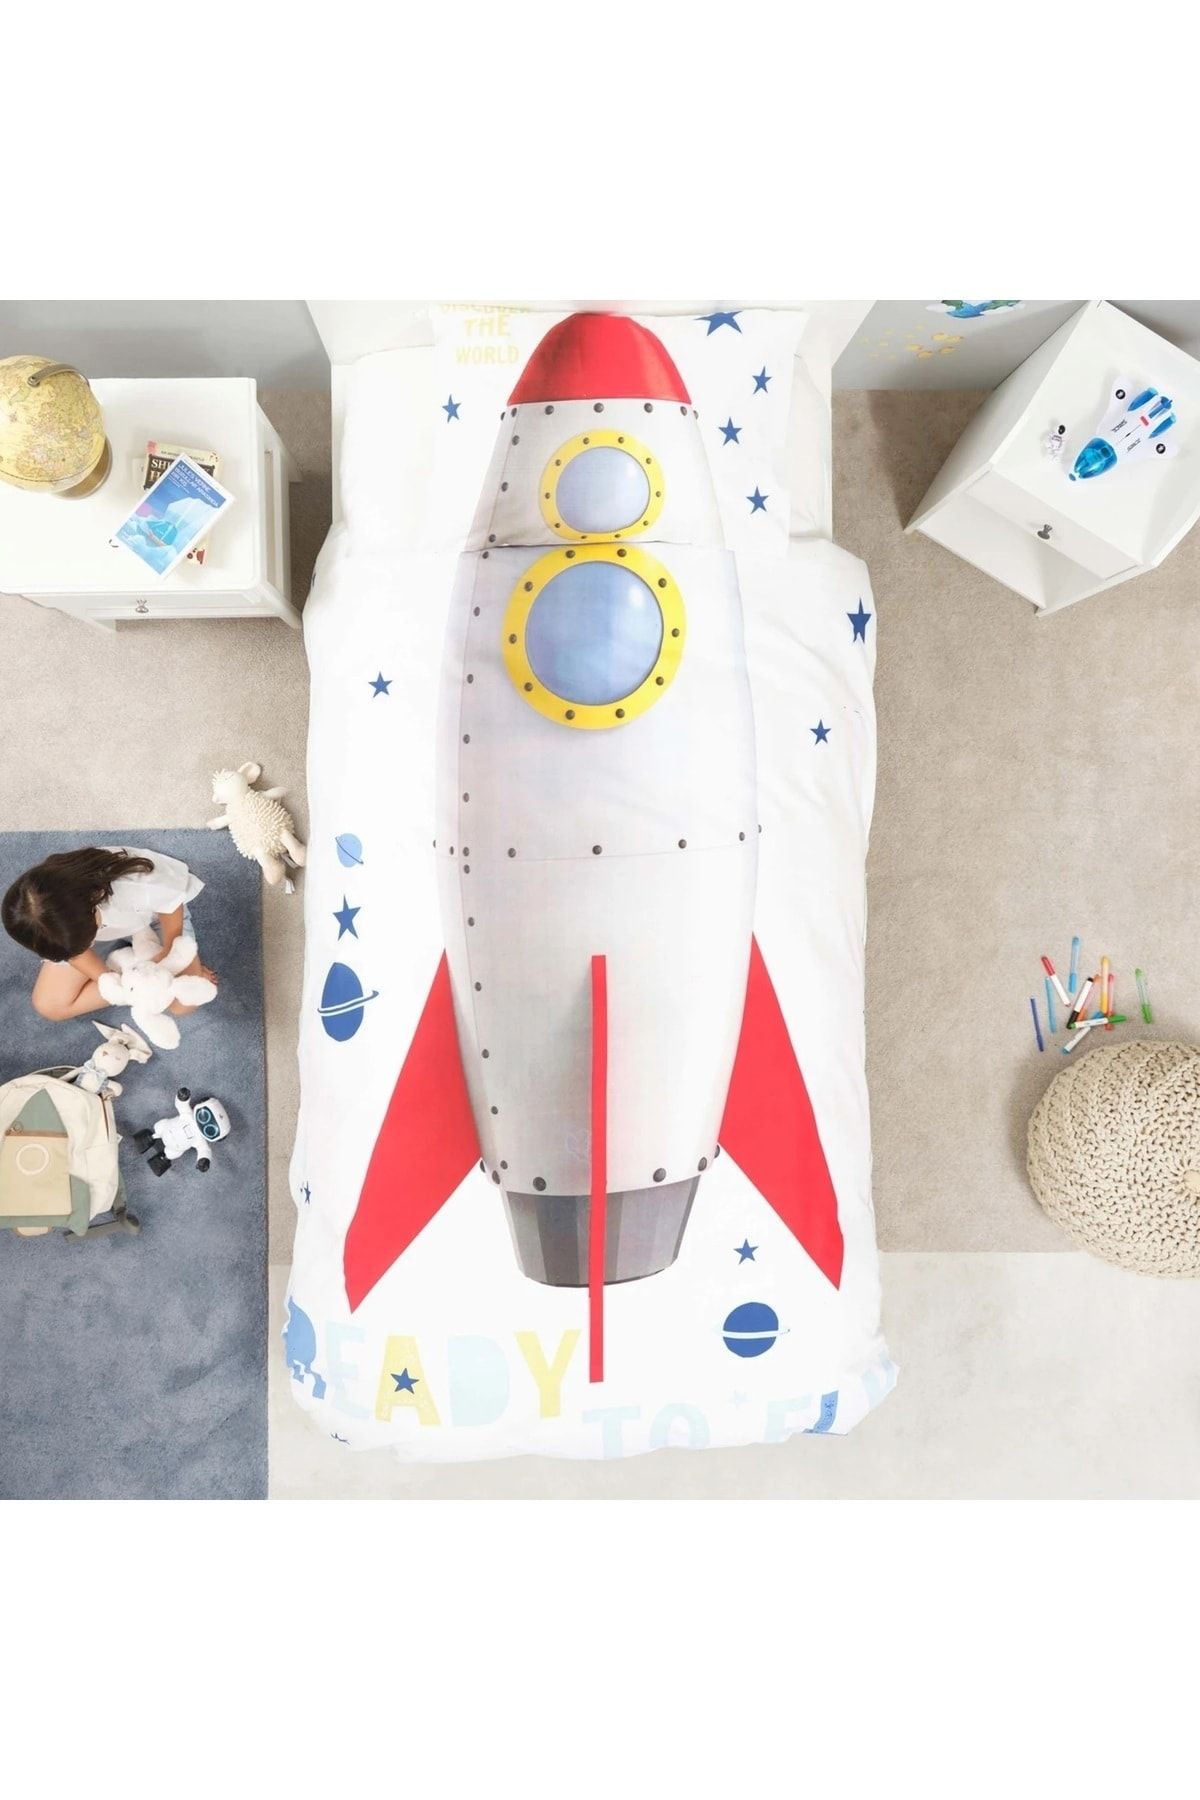 Jungle Pamuk Uzay Roket Desenli Çocuk Odası Erkek Çocuk Nevresim Takımı